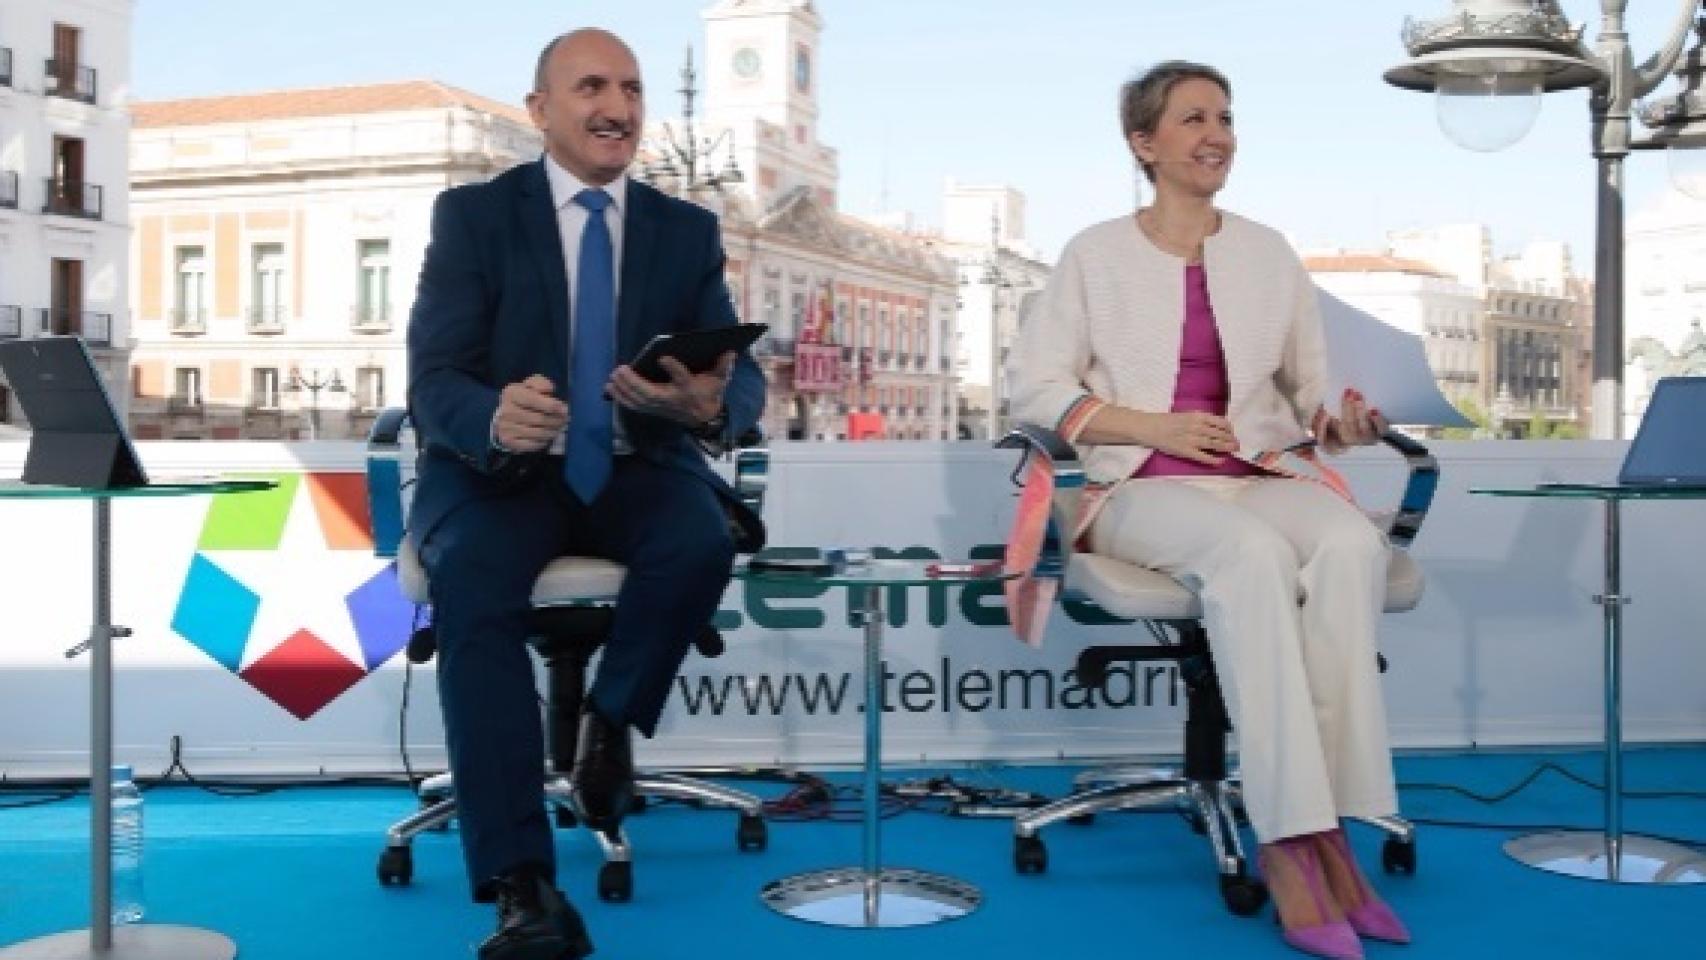 Telemadrid se echará a la calle en San Isidro y laOtra emitirá el debate del PSOE